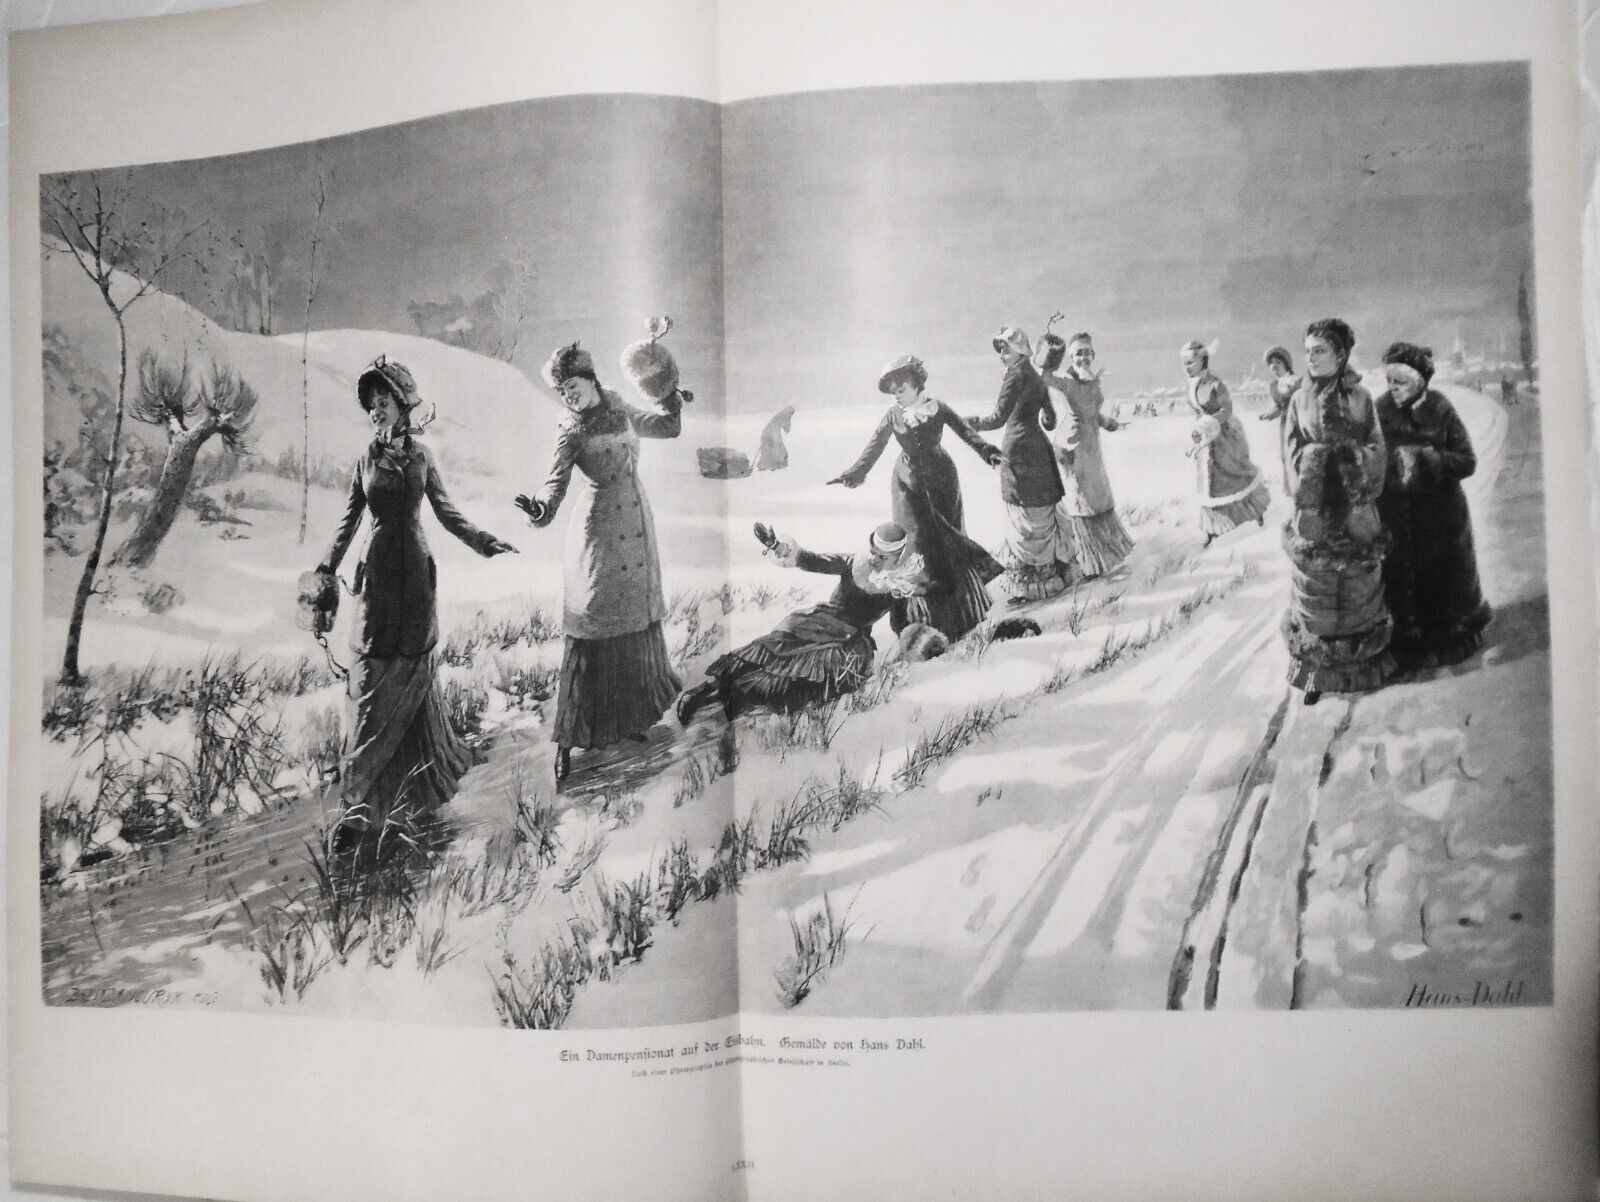 Damenpensionat auf der Eisbahn, by Hans Dahl  --  1886 - 22x16\